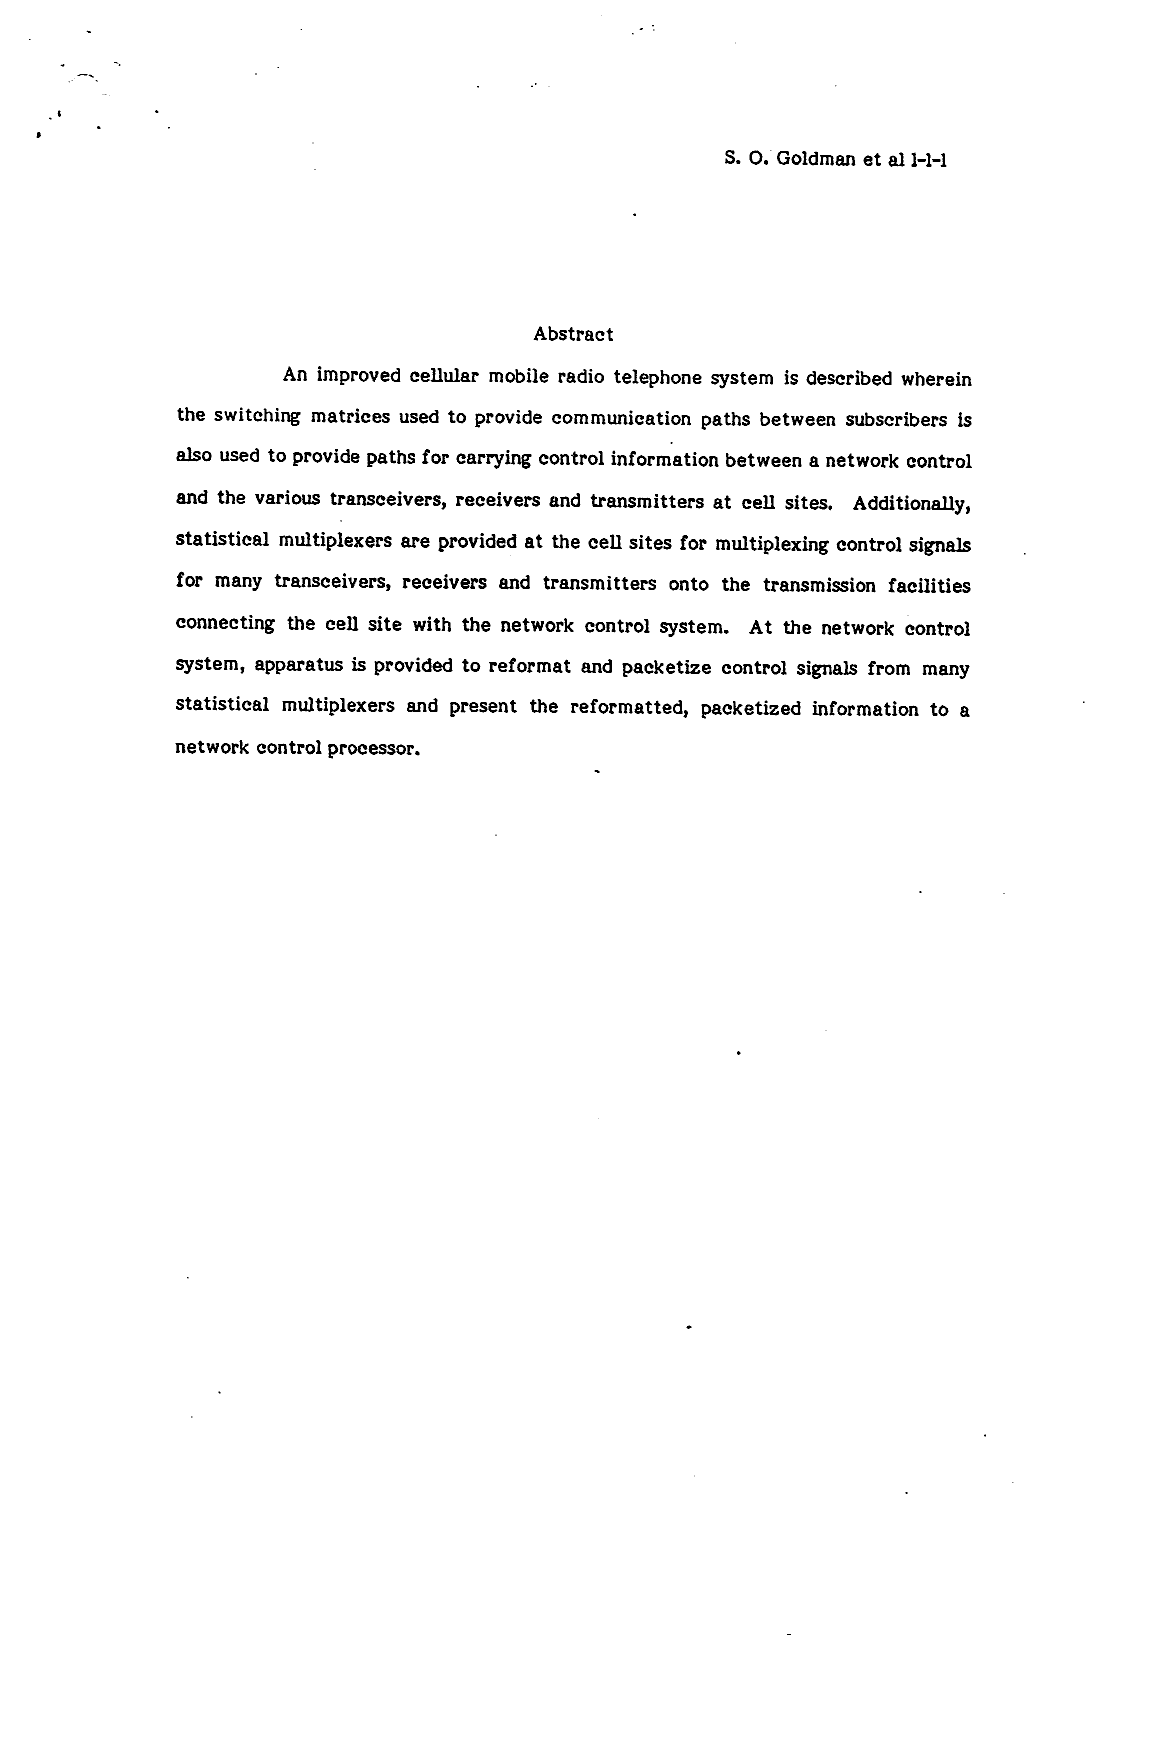 Document de brevet canadien 1234601. Abrégé 19930929. Image 1 de 1